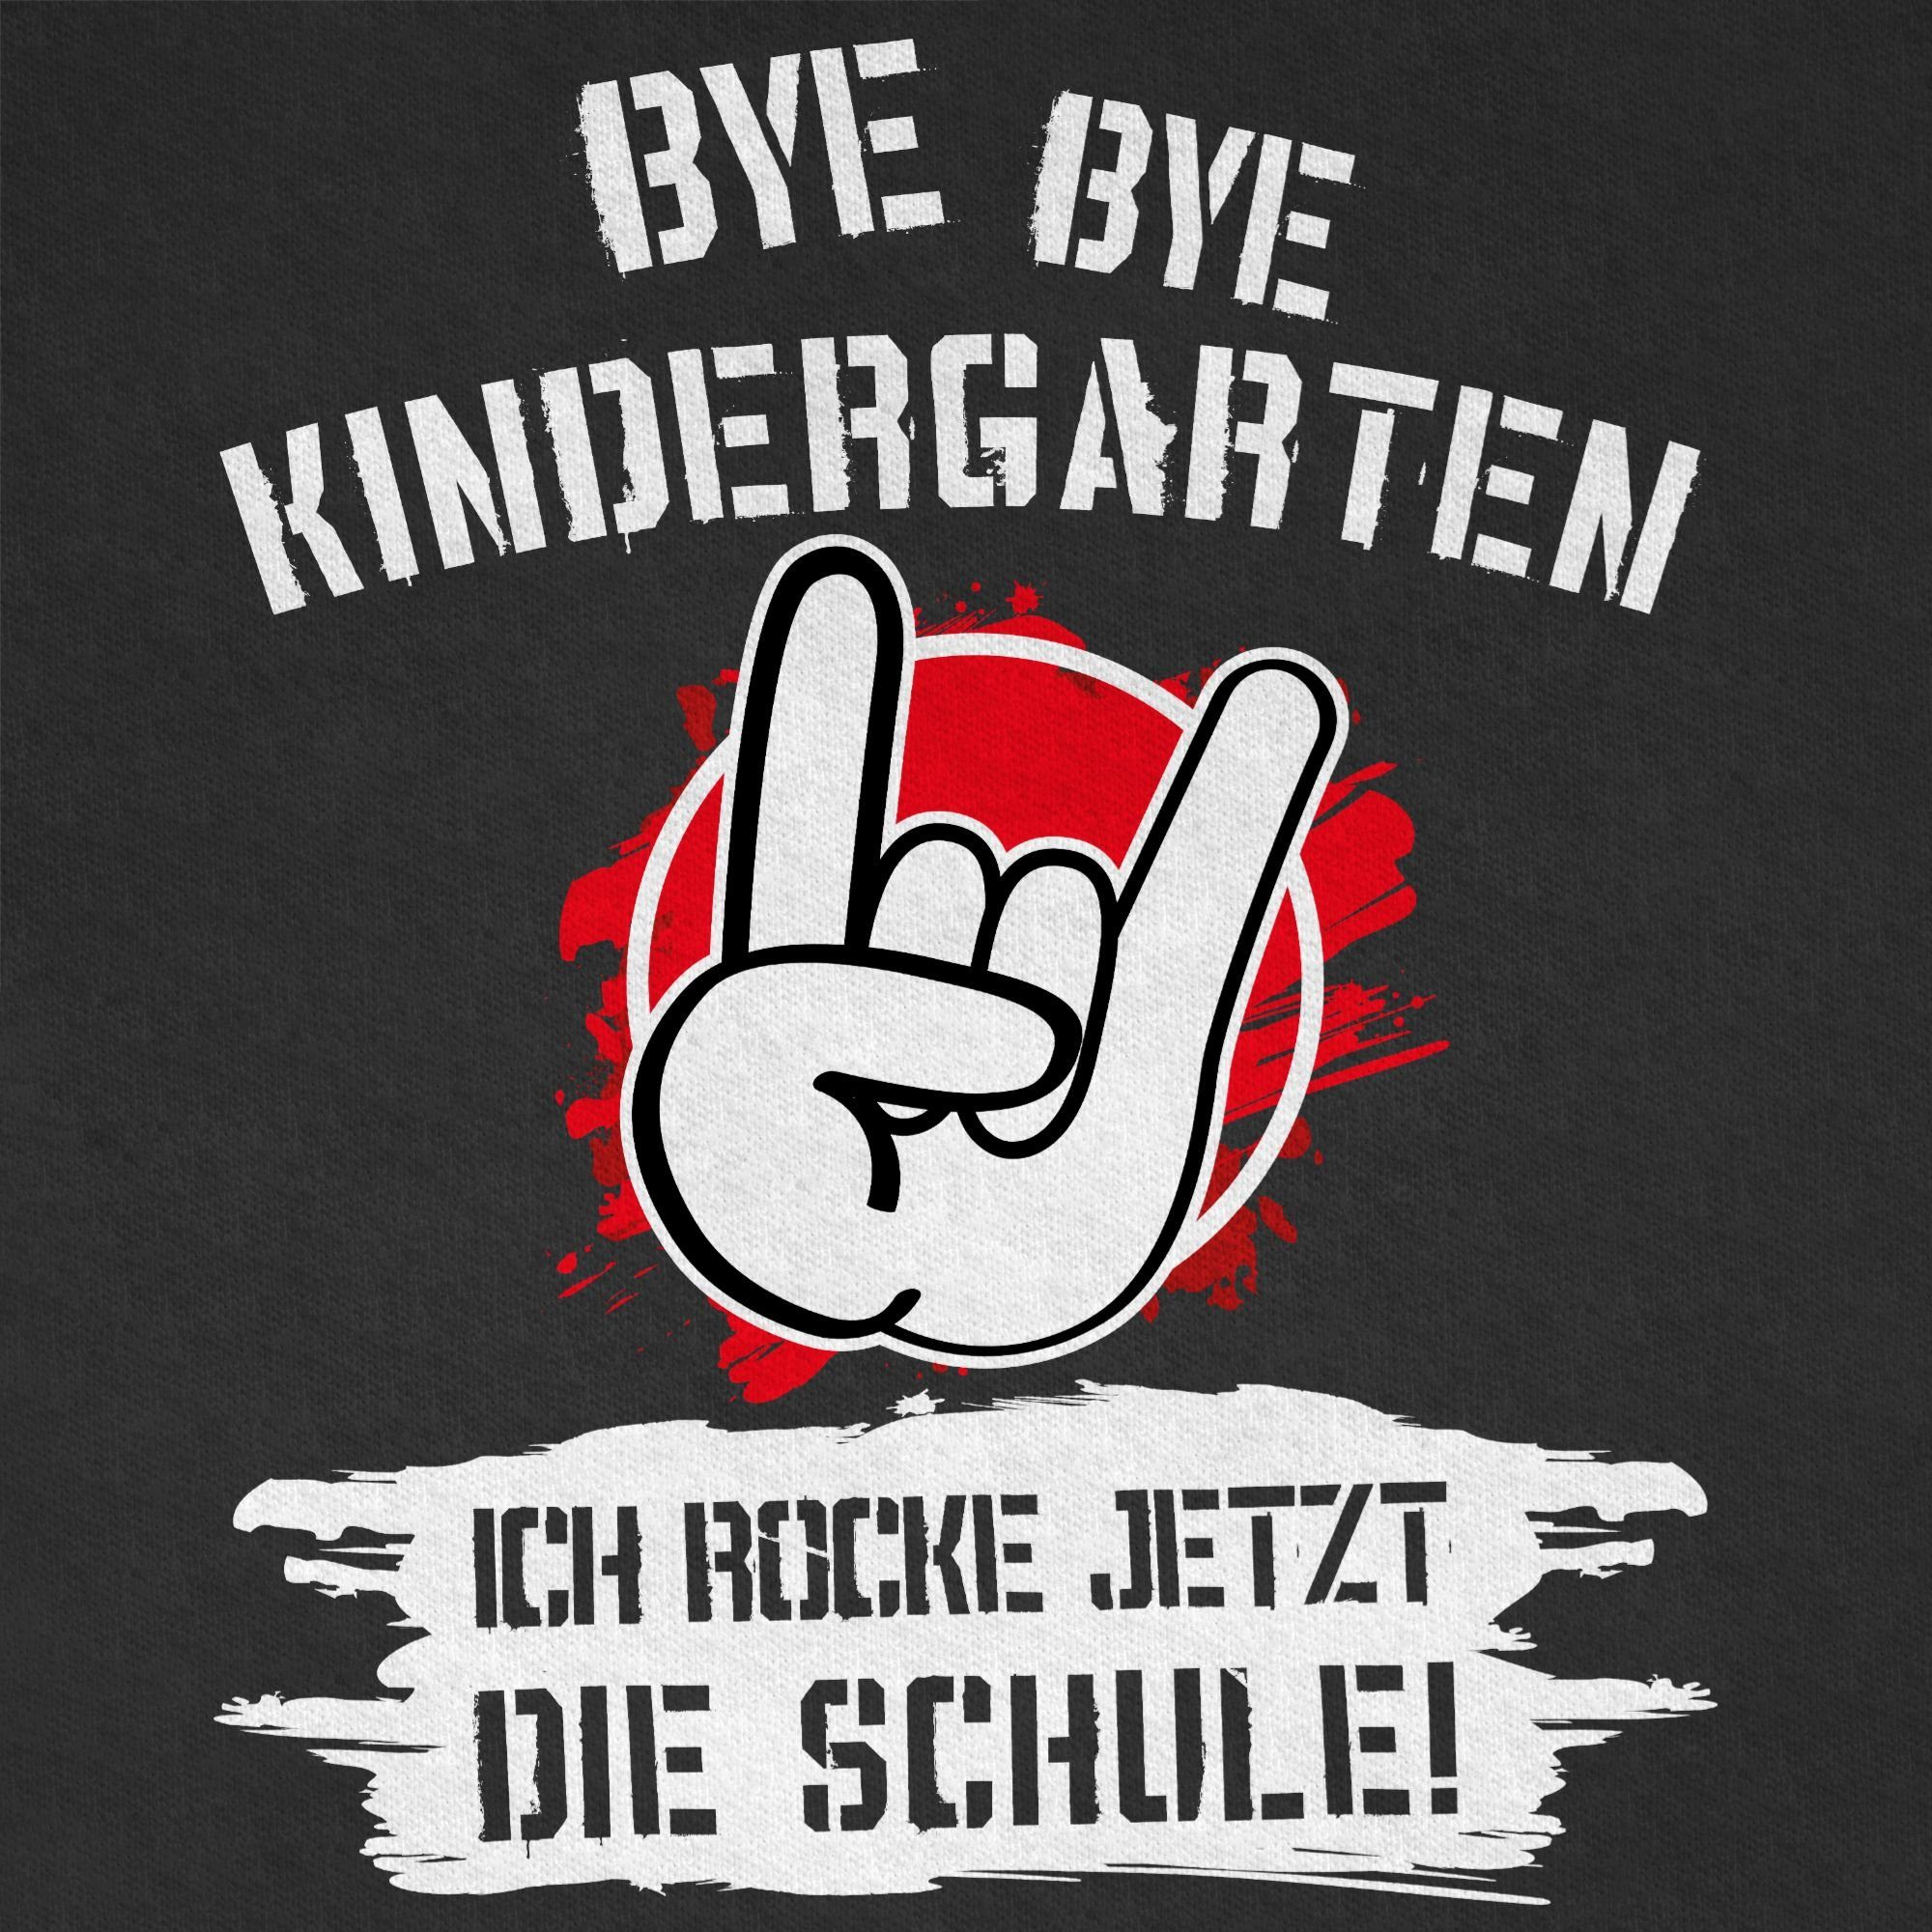 Shirtracer T-Shirt Bye Bye Einschulung Geschenke Schwarz Schulanfang Kindergarten jetzt rocke Schule Grunge 1 ich die Junge Rot